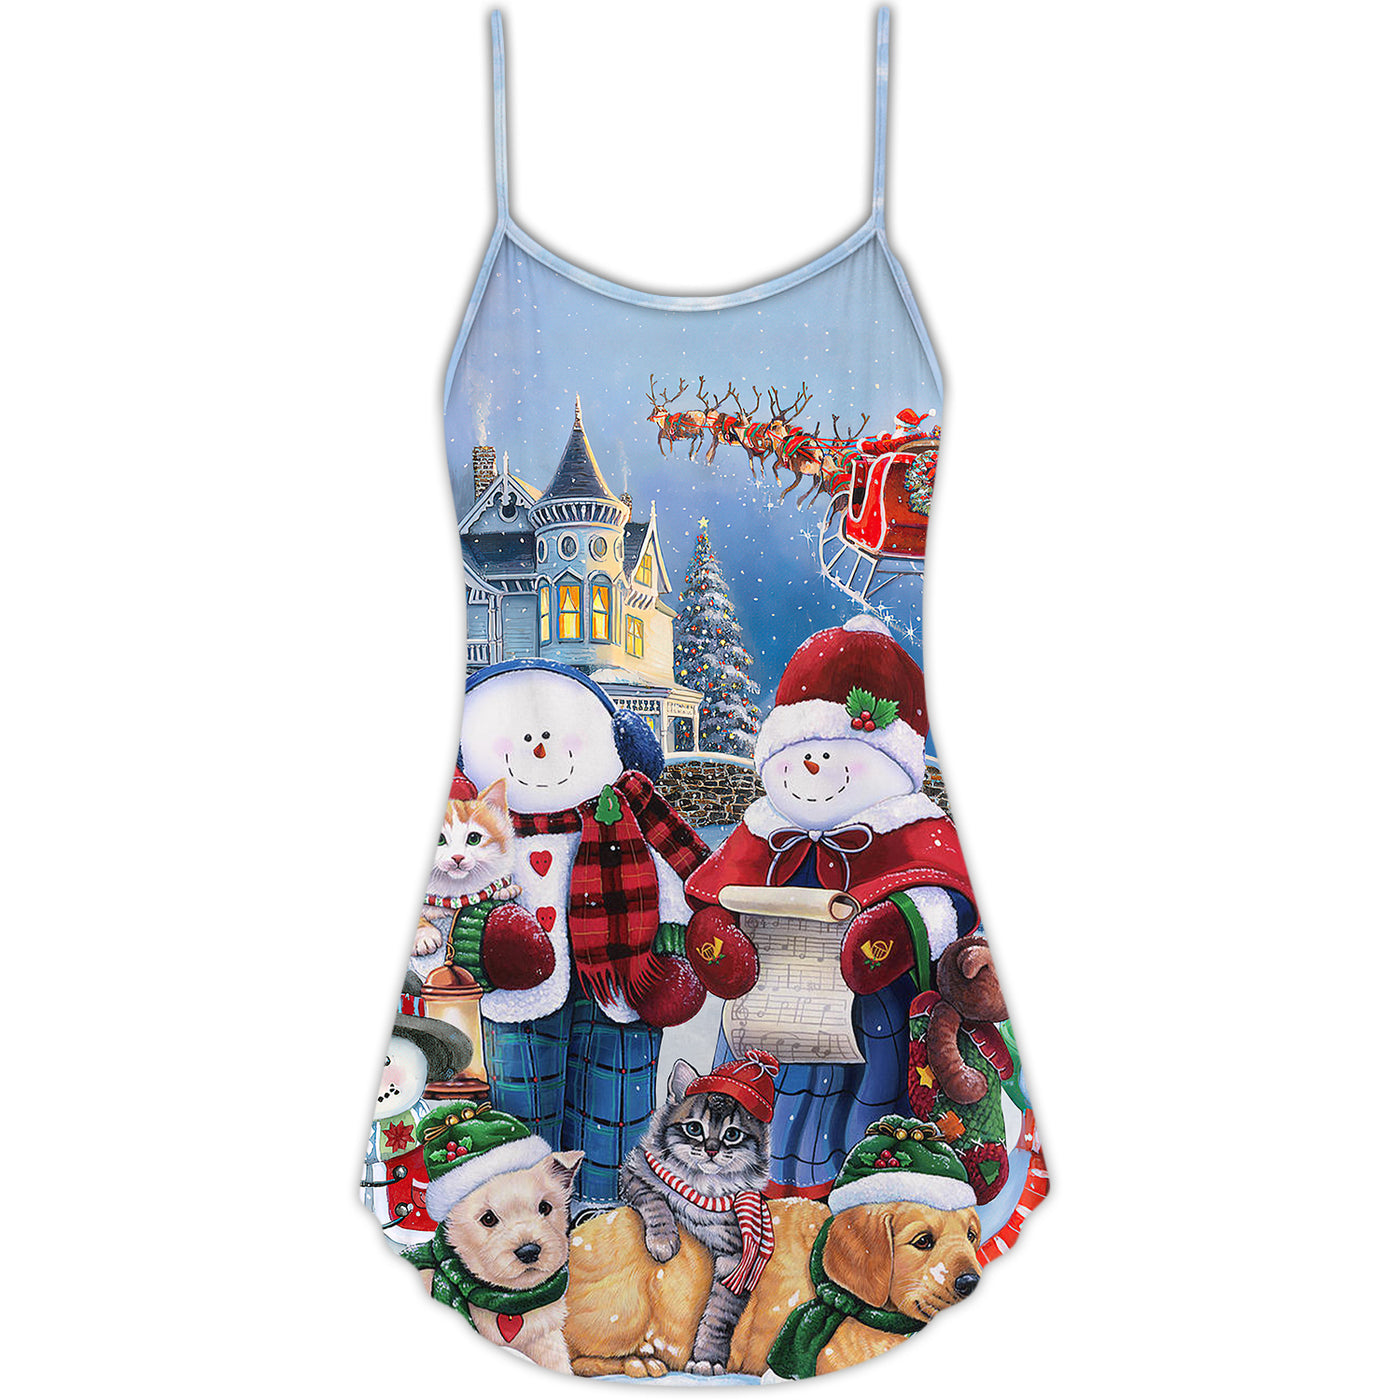 Christmas Family In Love Snowman So Happy Xmas Art Style - V-neck Sleeveless Cami Dress - Owls Matrix LTD